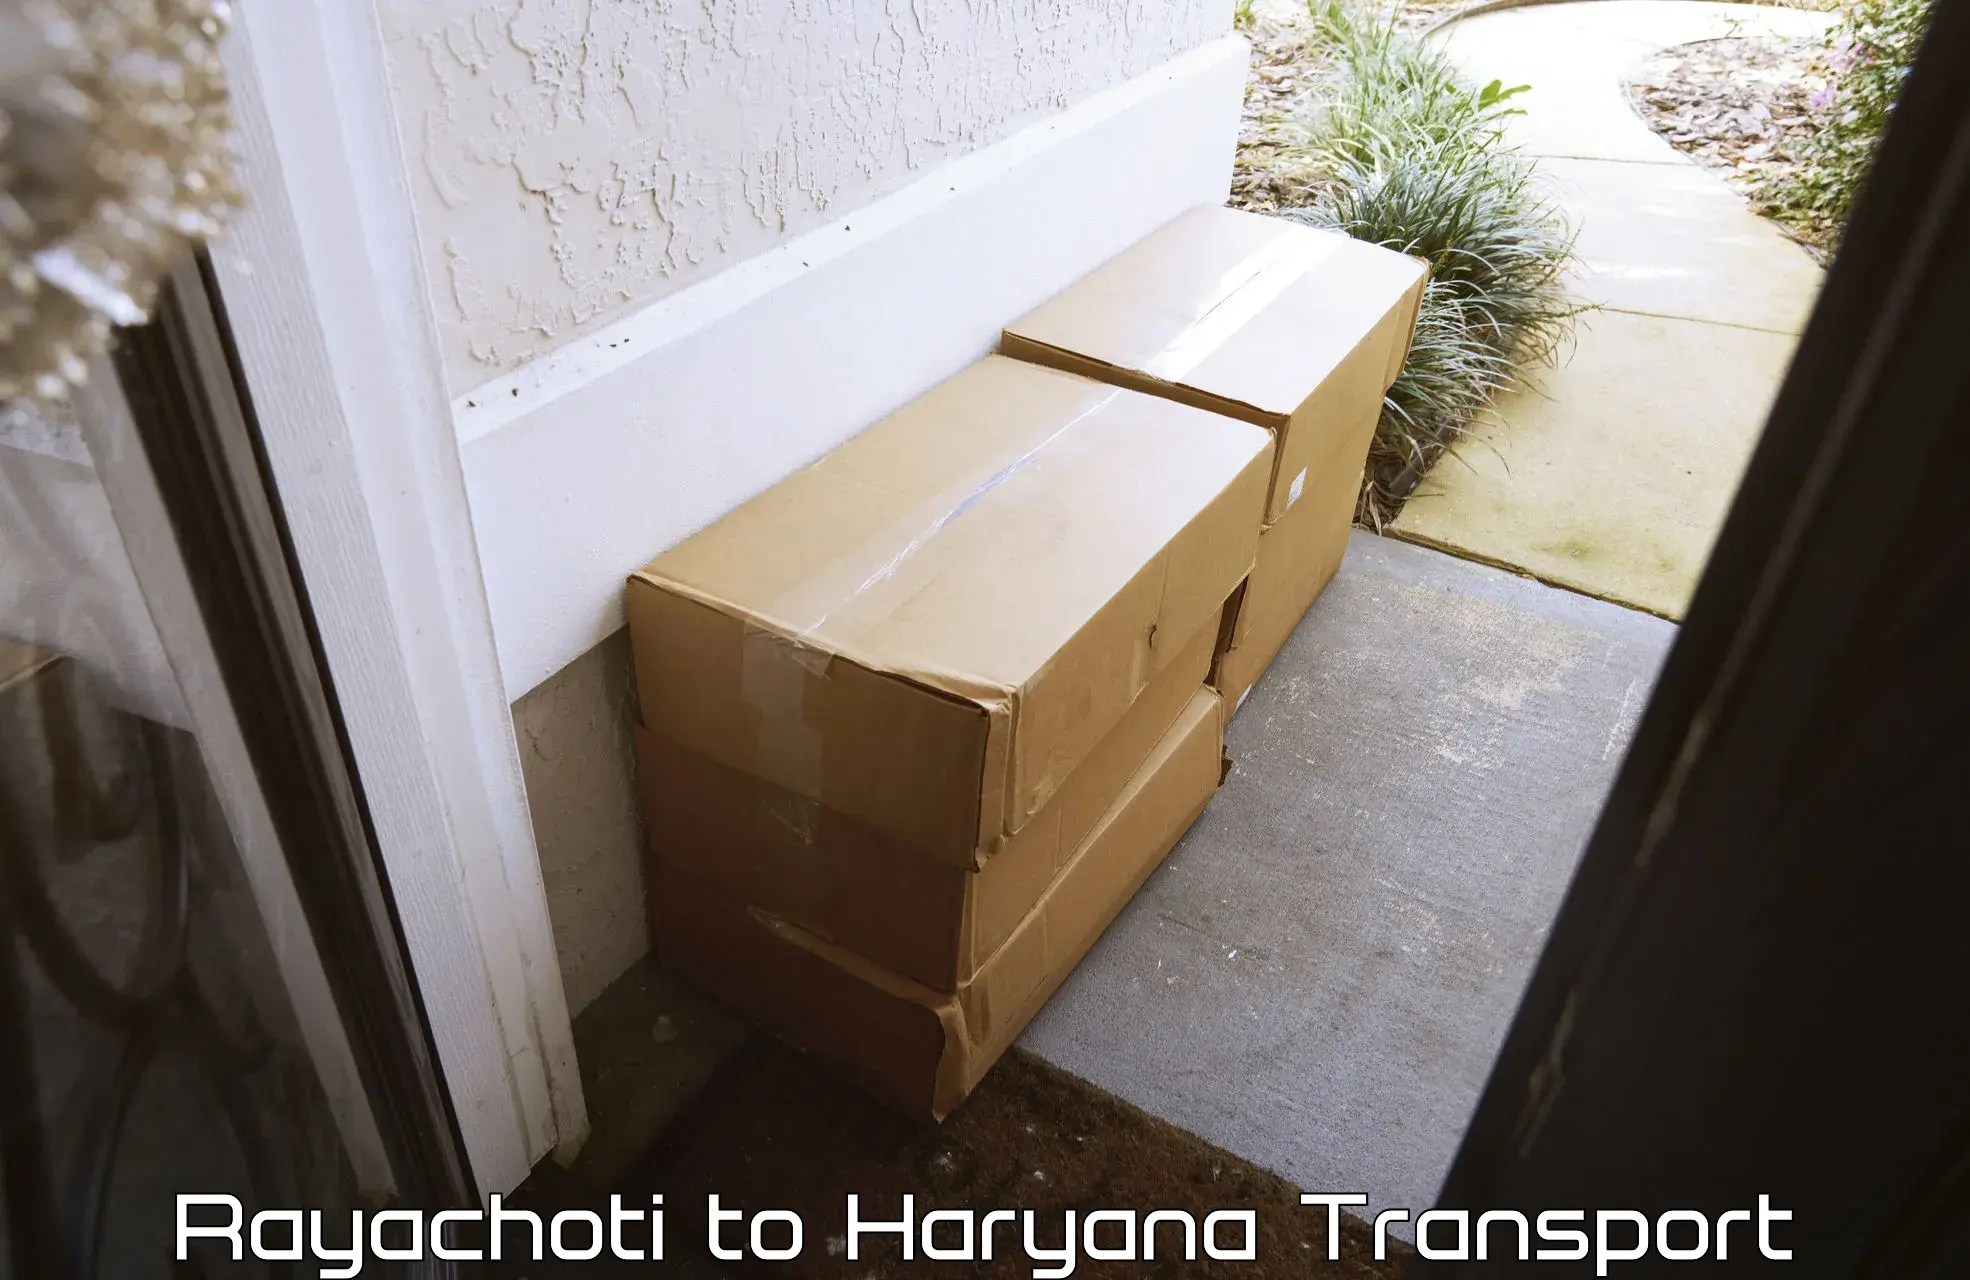 Container transport service Rayachoti to Gurugram